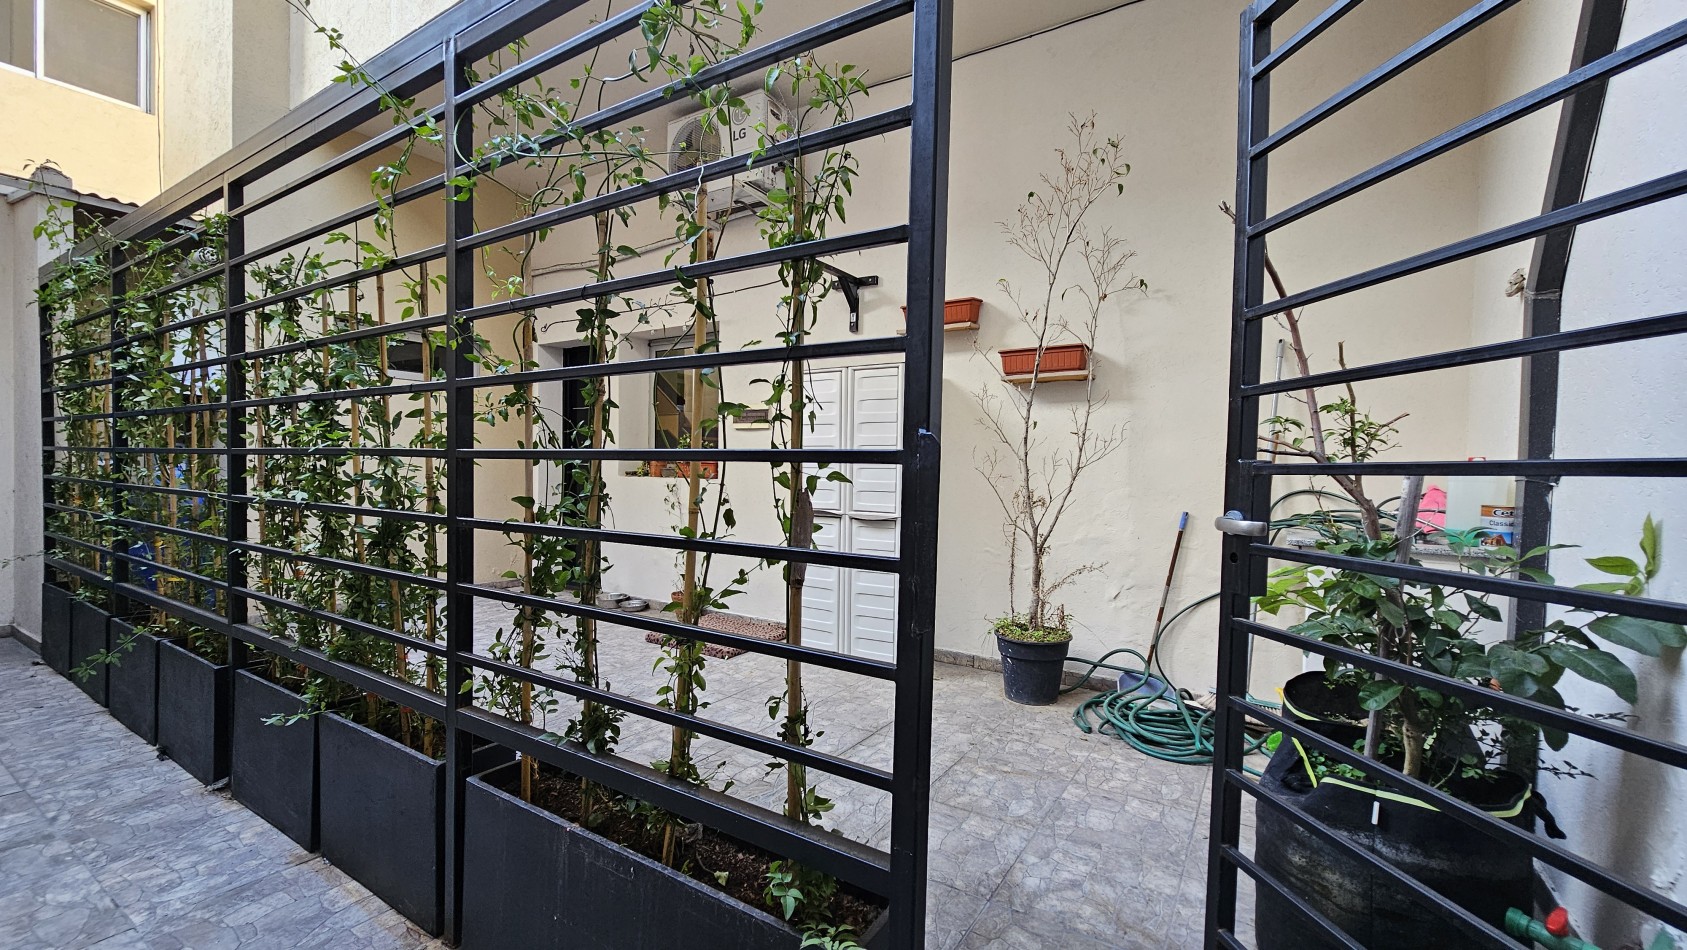 Departamento de 3 ambientes con patio interno y planta baja